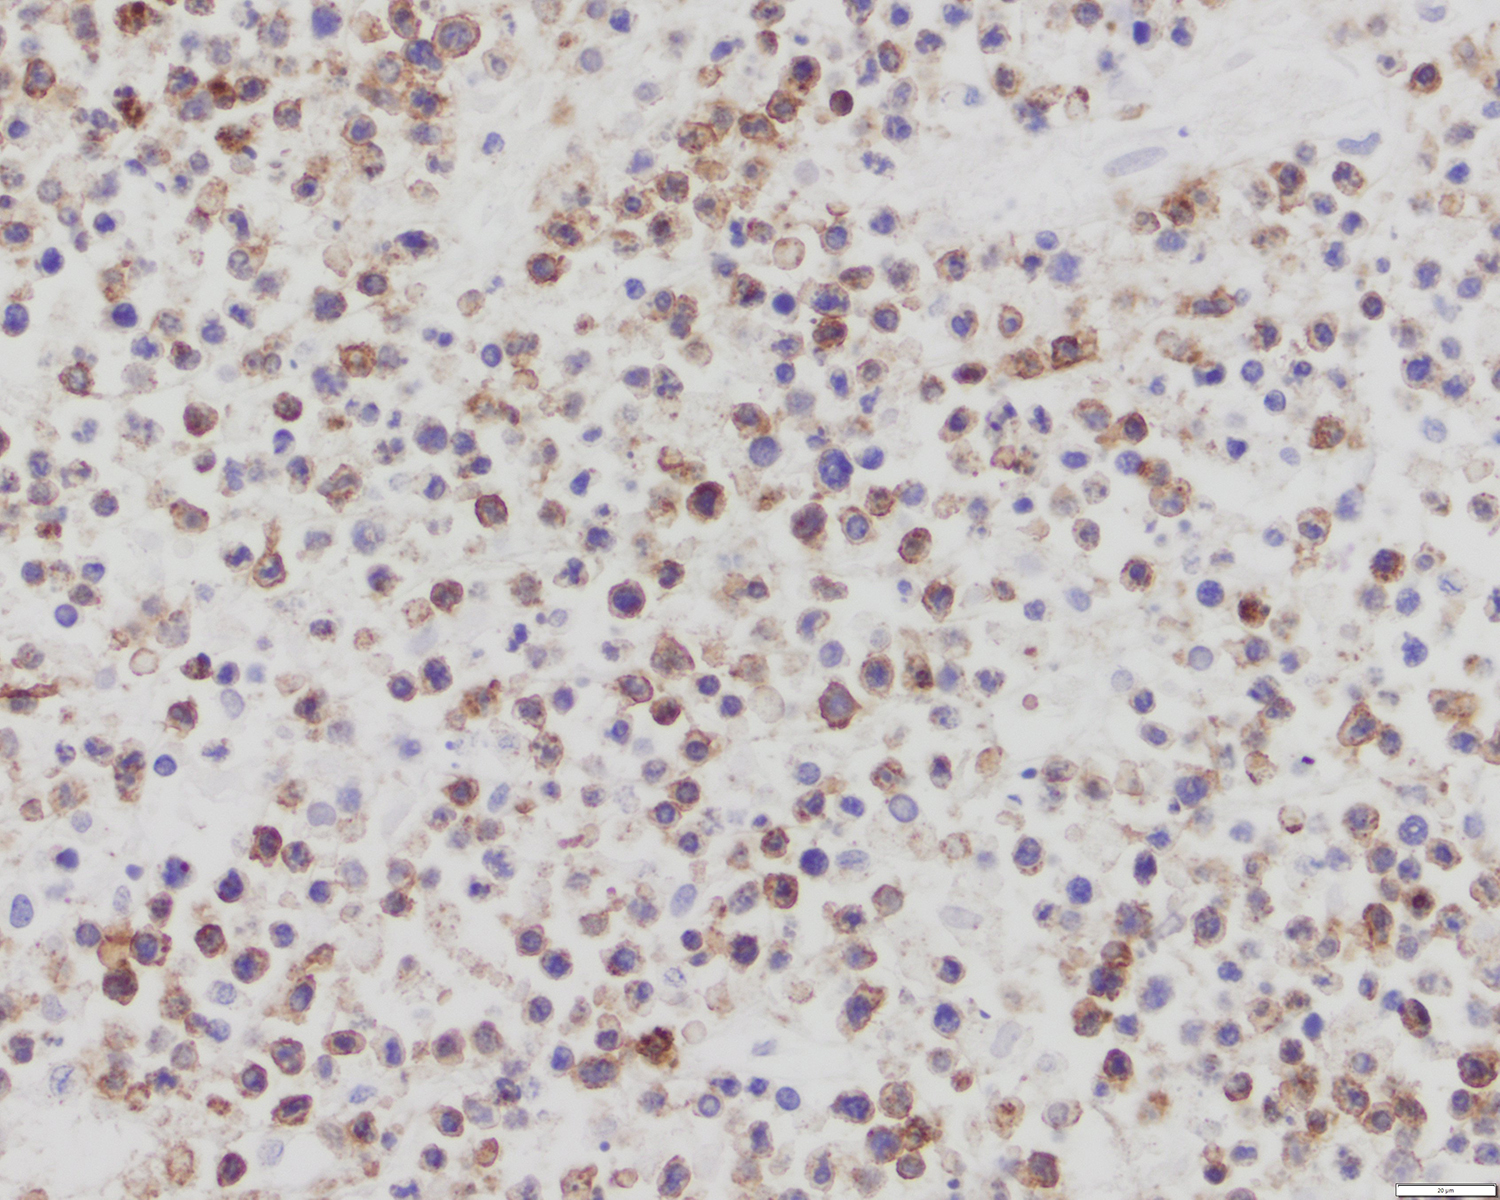 CD8 positive lymphoma cells